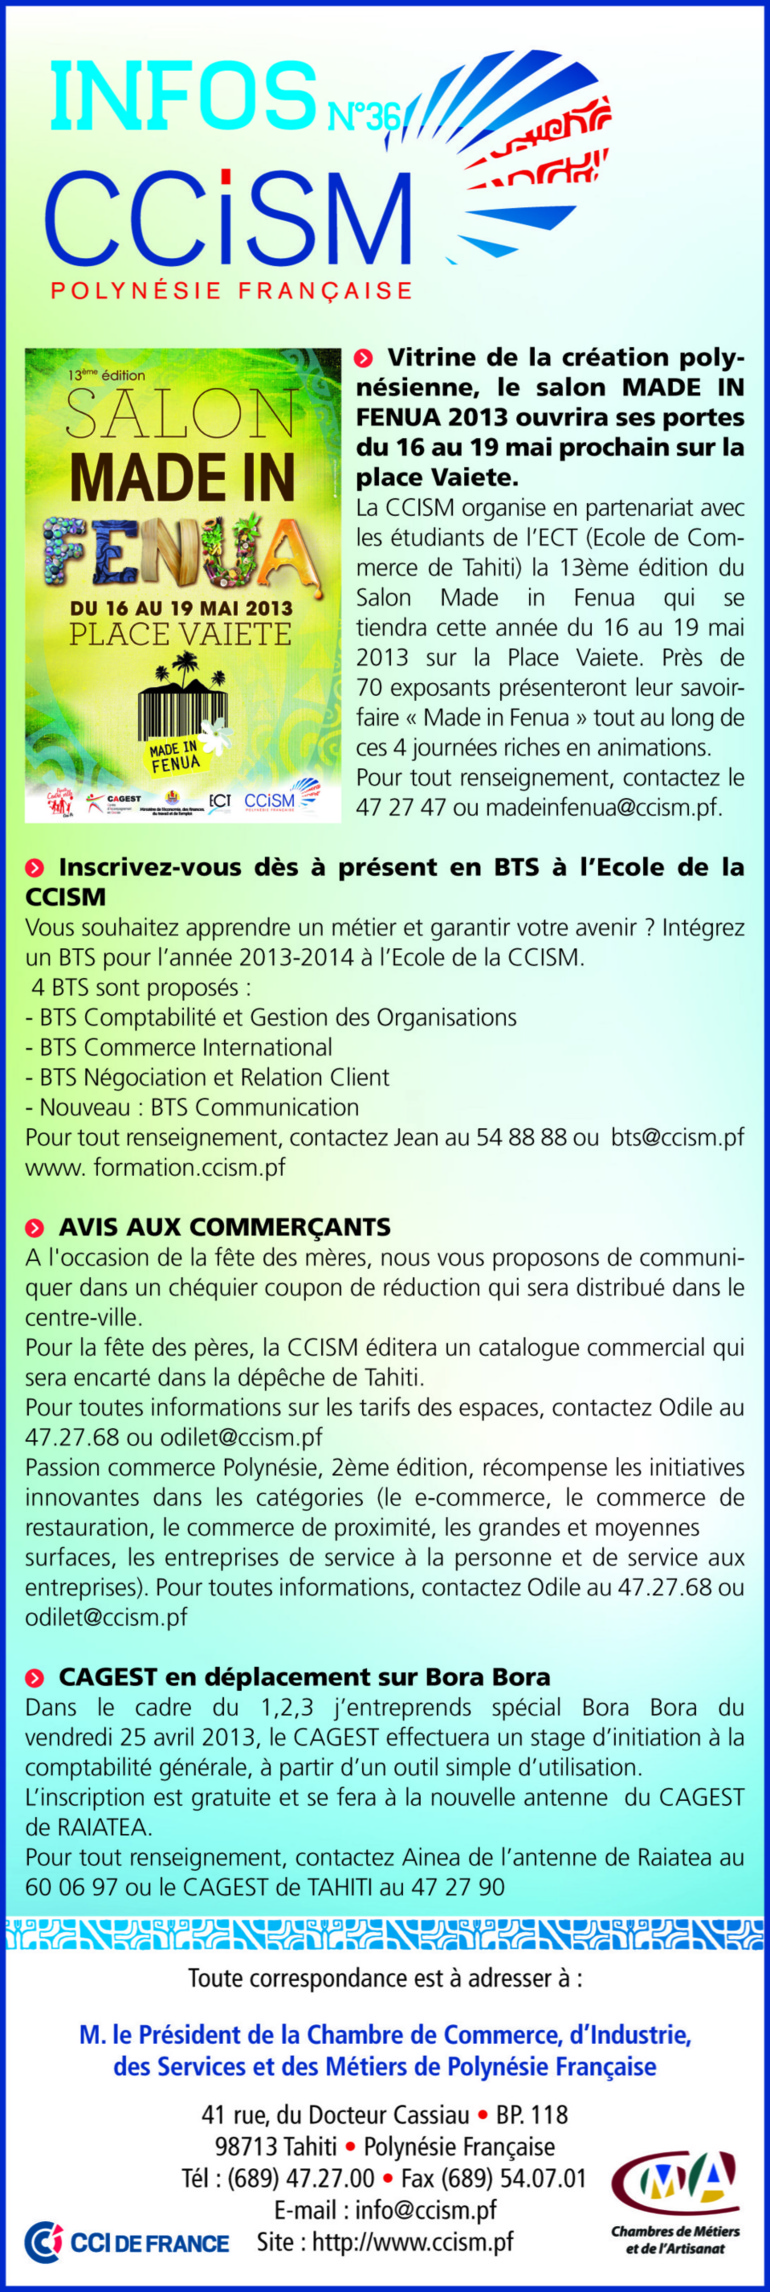 Infos CCISM N°36